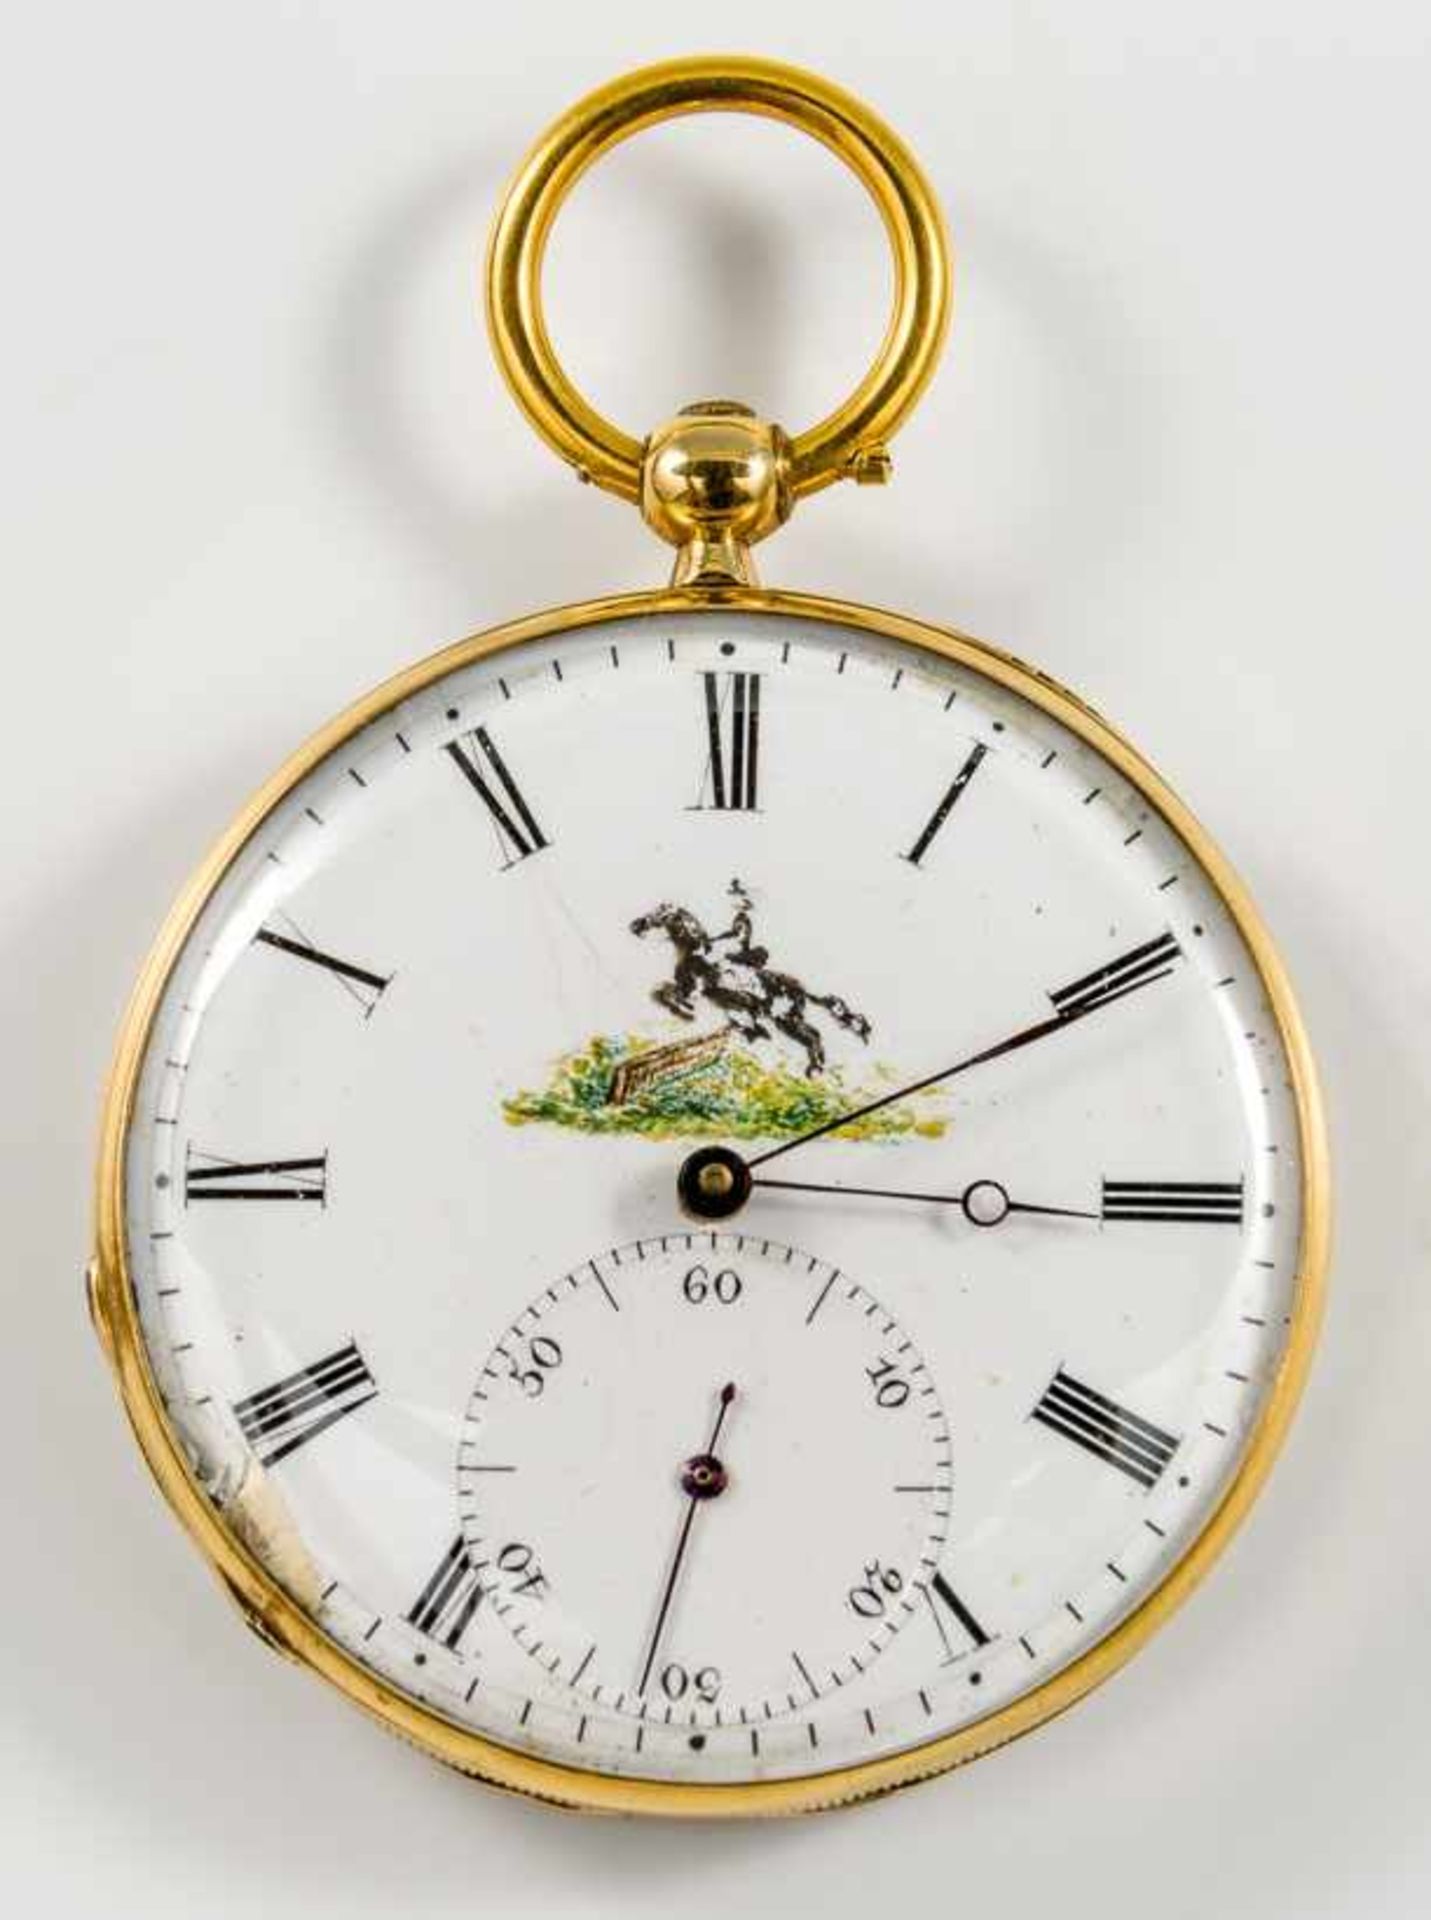 Patek-Taschenuhr mit Schlüsselaufzug.Um 1850/60.Gold. Weißes Zifferblatt m. dezentrierter Sekunde u.